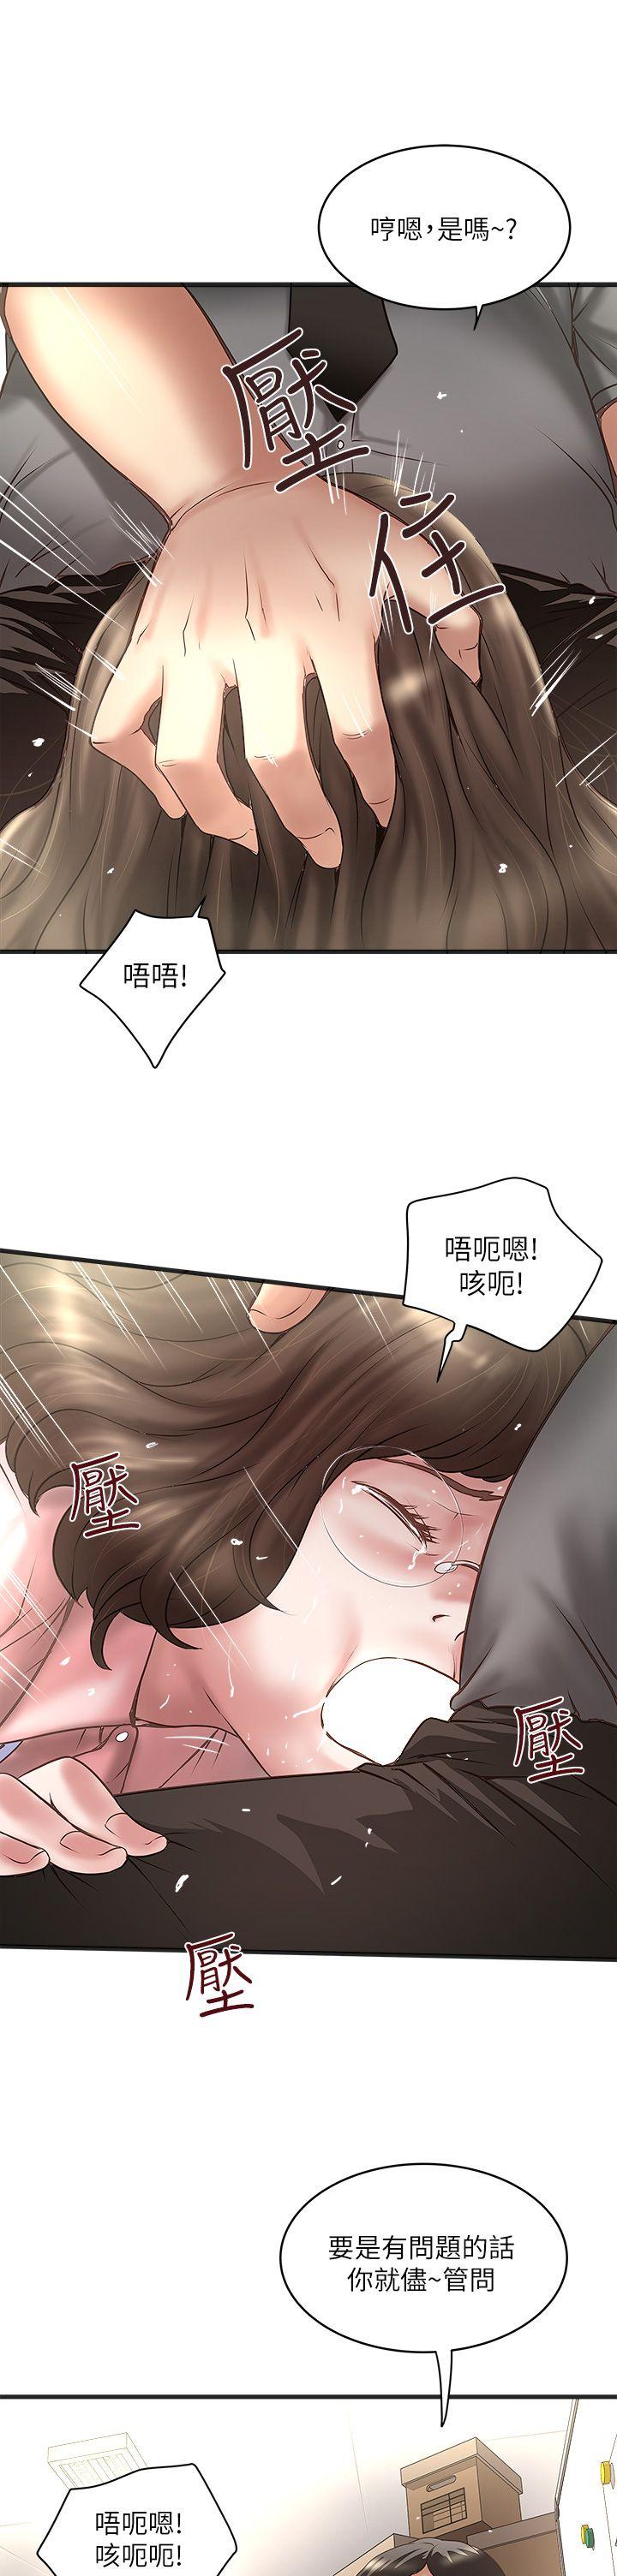 韩国污漫画 下女,初希 第17话-到达极限的俊皓 3